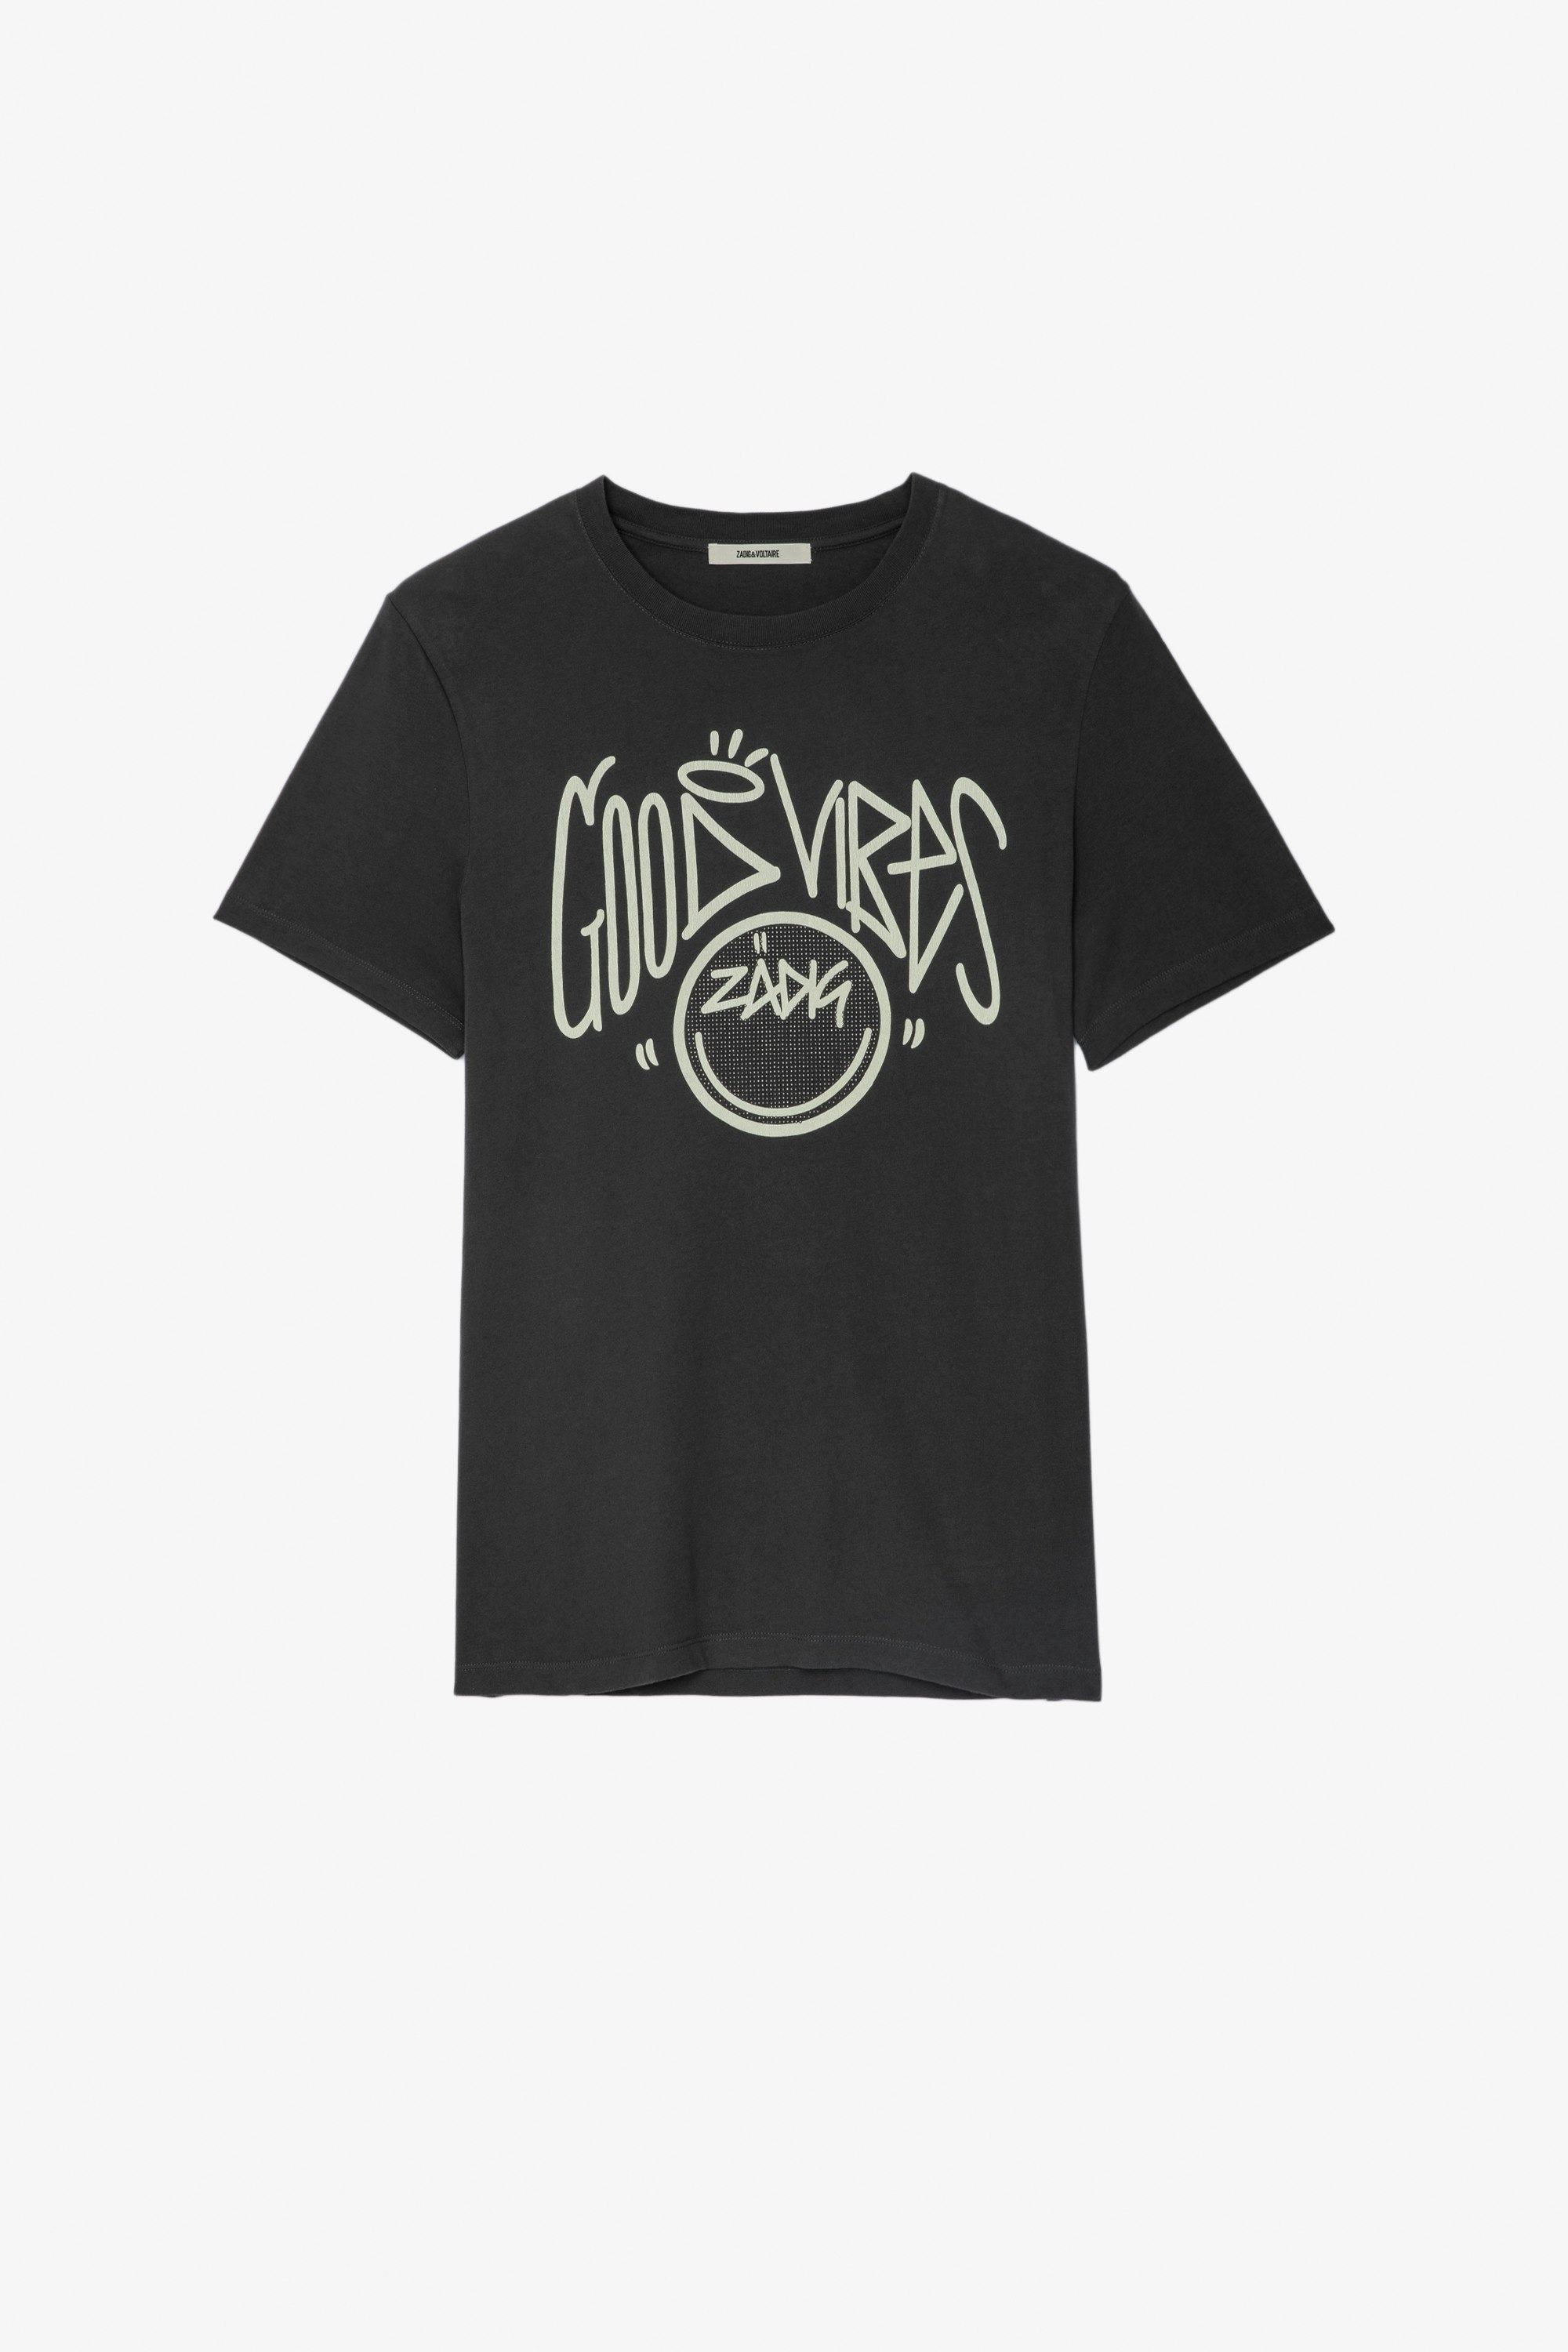 Tommy T-Shirt グレー コットンTシャツ 「Good Vibes」のメッセージとHappy FaceのZadigのデザイン クリスタル メンズ